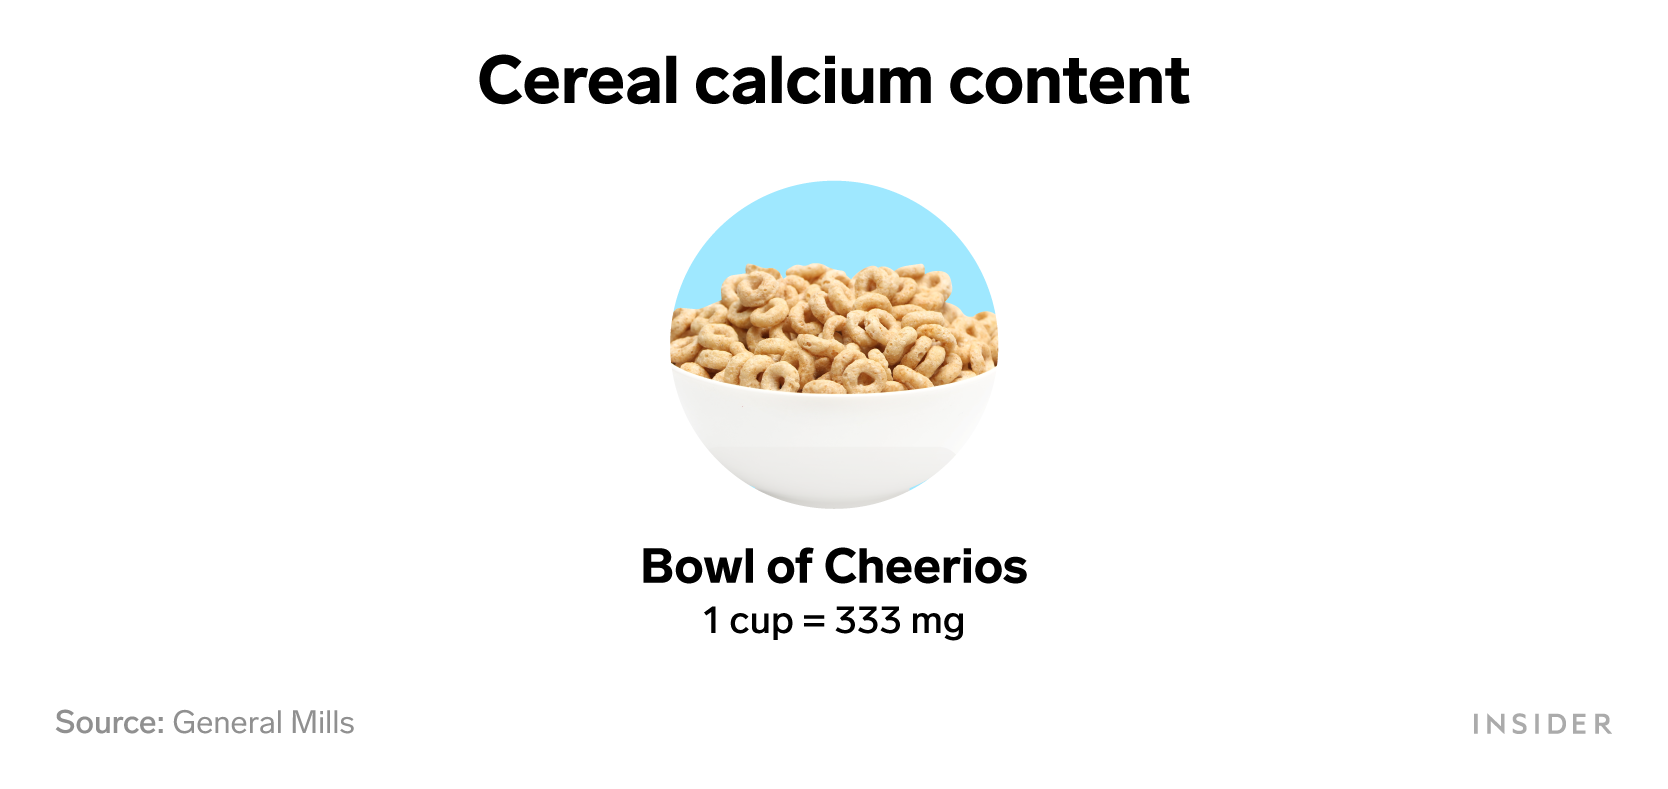 Foods that are rich in calcium: Cereal calcium content